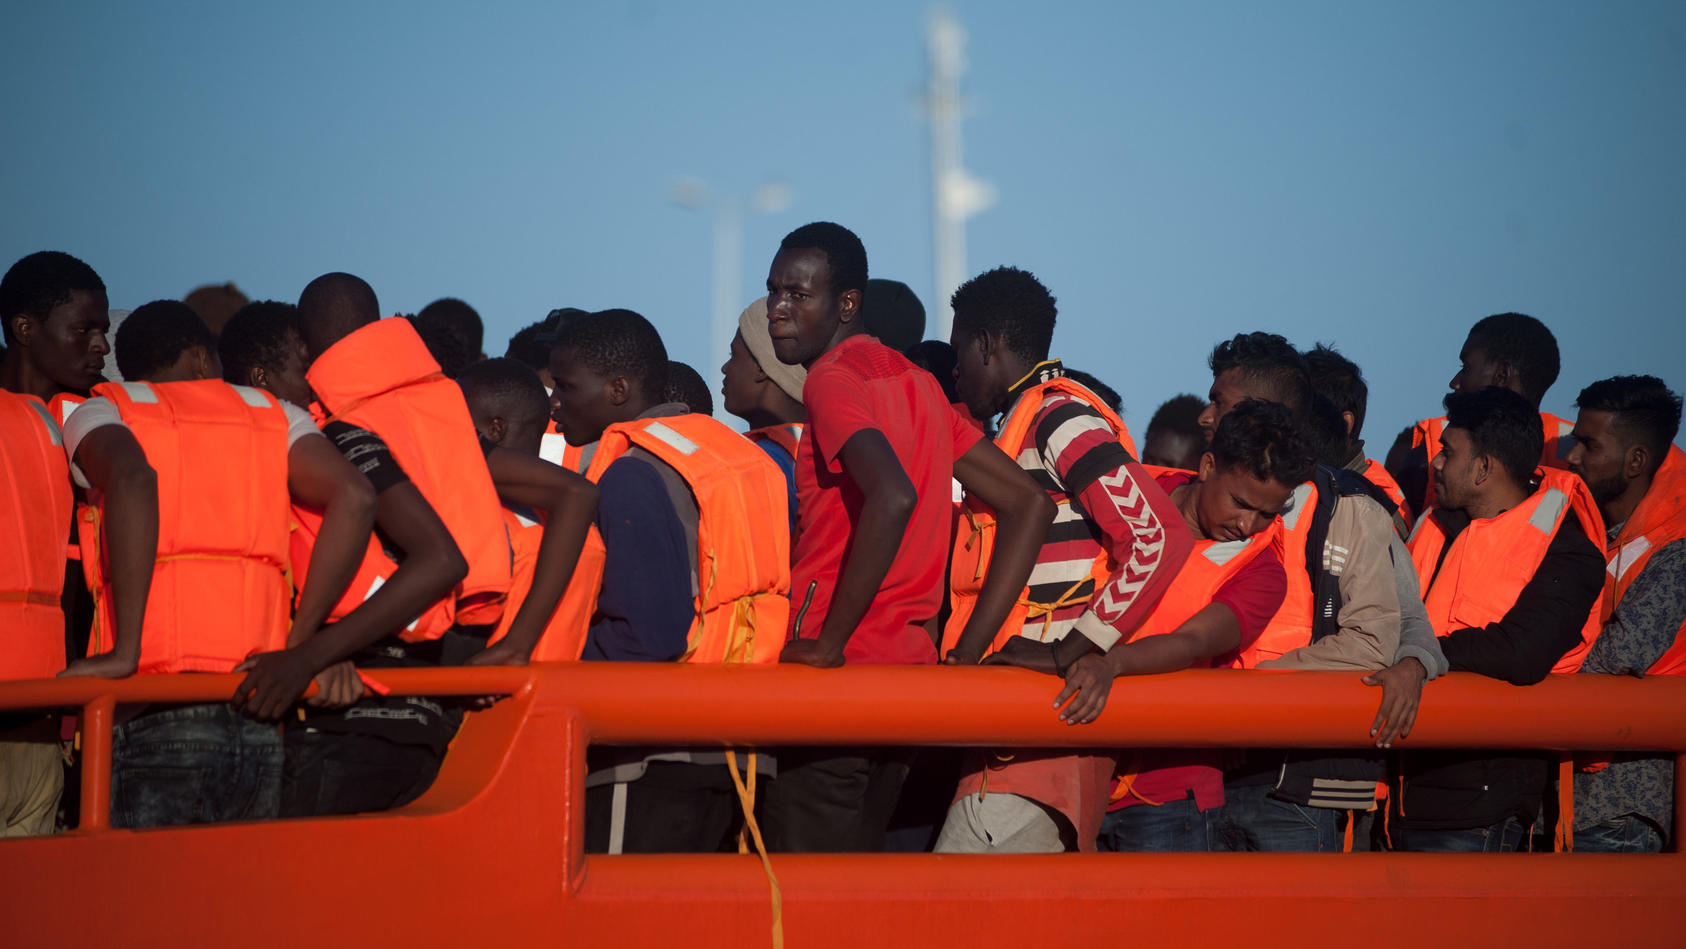 Wohin die aus dem Mittelmeer geretteten Flüchtlinge jetzt gebracht werden sollen, ist noch völlig unklar.